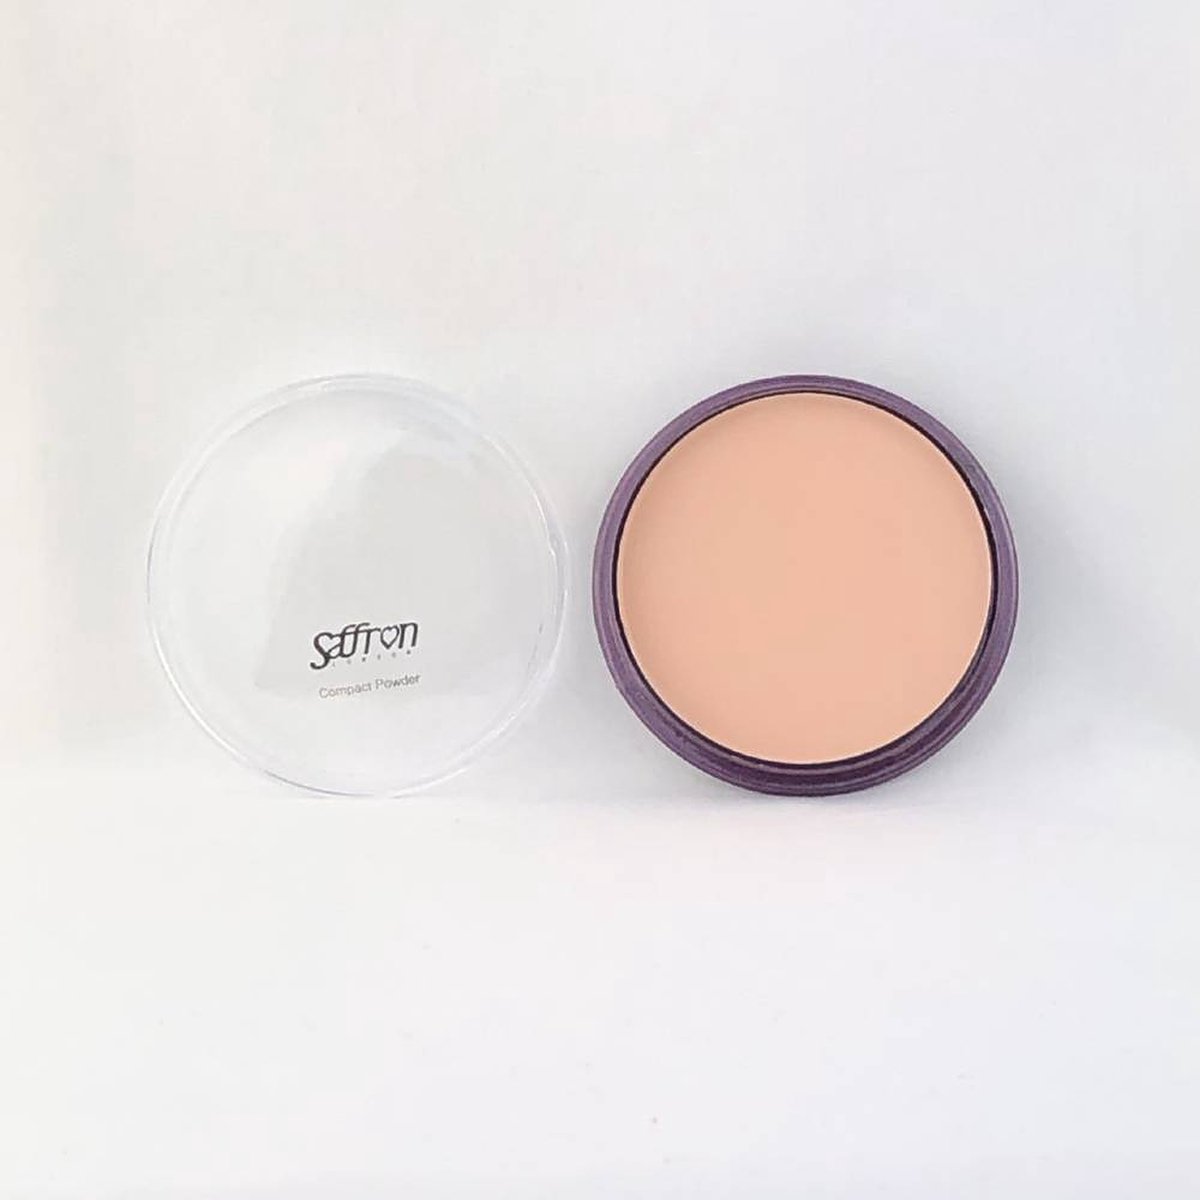 Saffron compact powder - 03 Fair